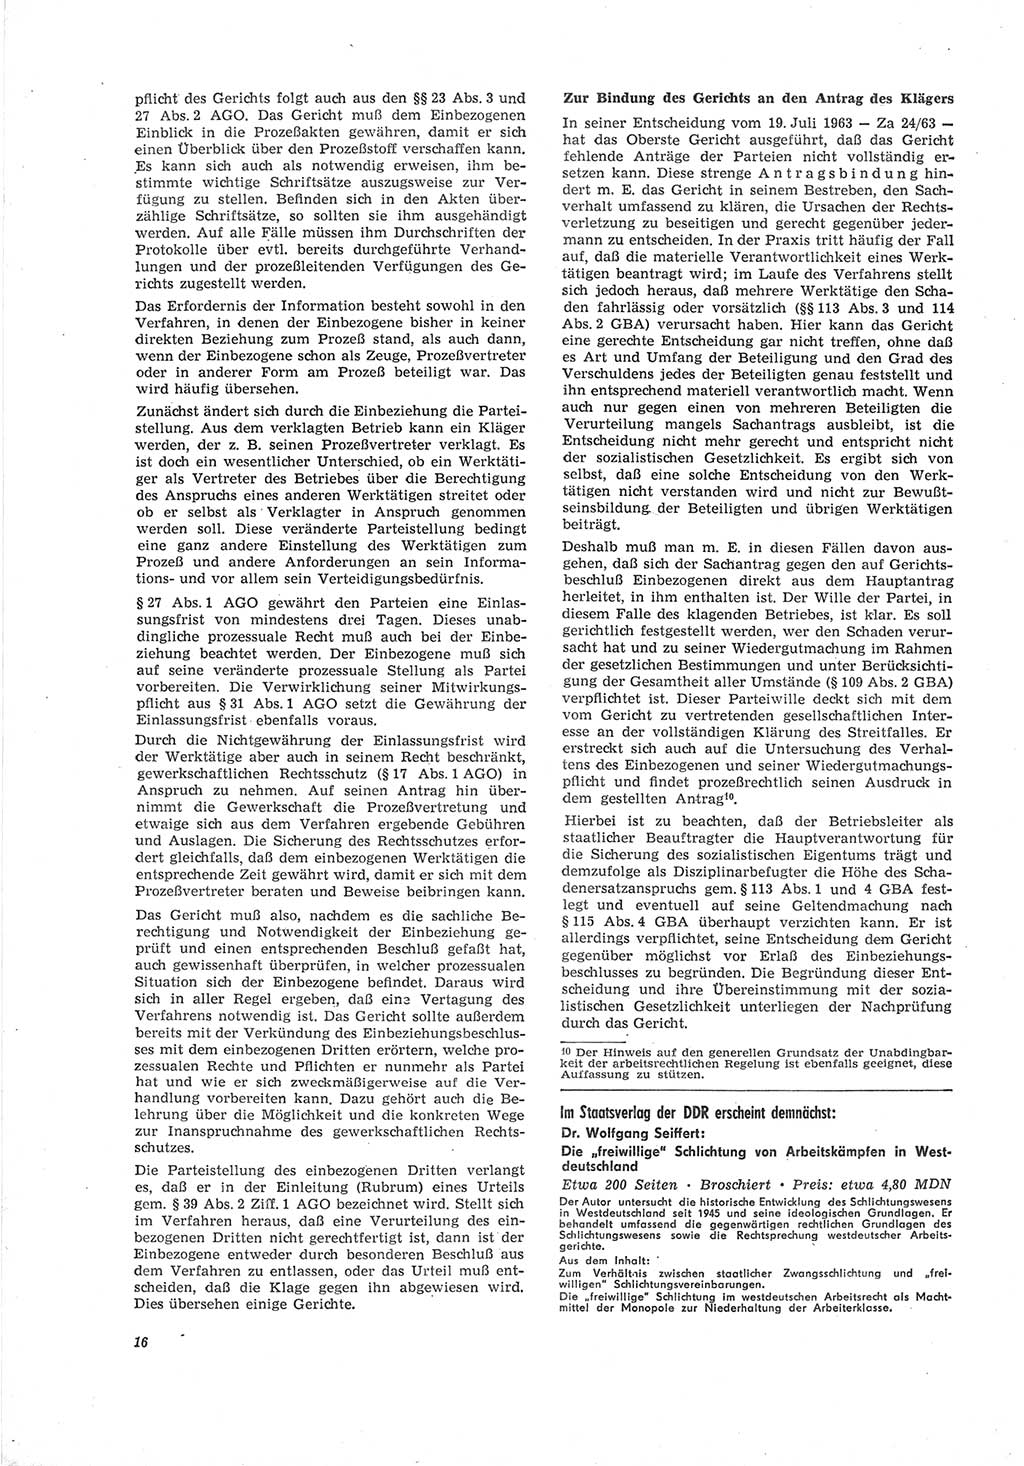 Neue Justiz (NJ), Zeitschrift für Recht und Rechtswissenschaft [Deutsche Demokratische Republik (DDR)], 19. Jahrgang 1965, Seite 16 (NJ DDR 1965, S. 16)